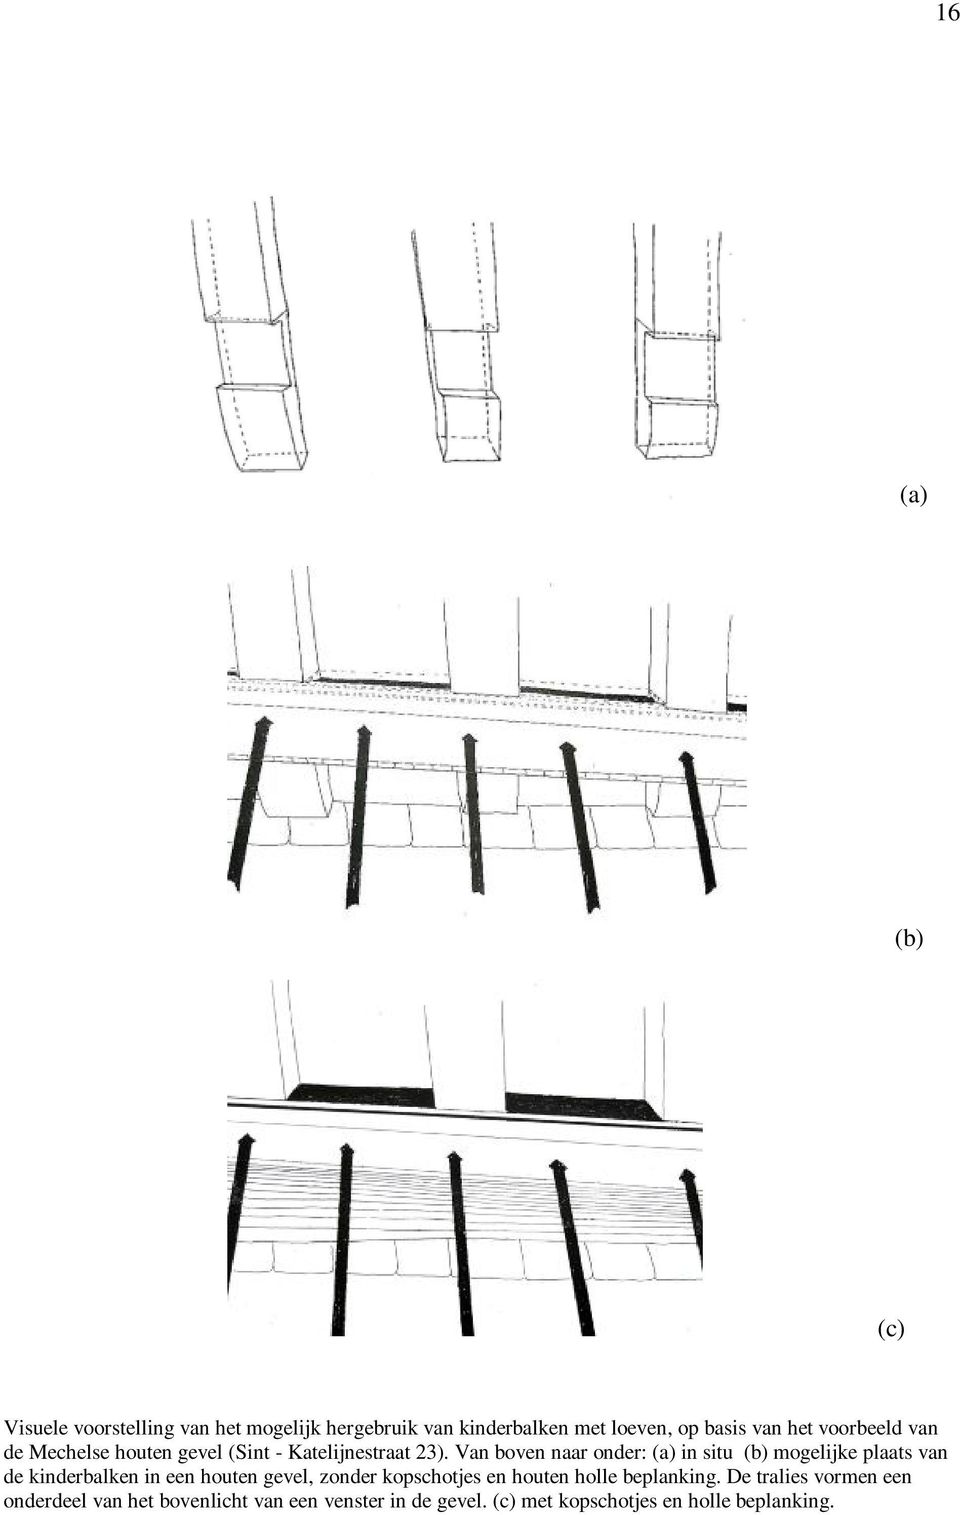 Van boven naar onder: (a) in situ (b) mogelijke plaats van de kinderbalken in een houten gevel, zonder